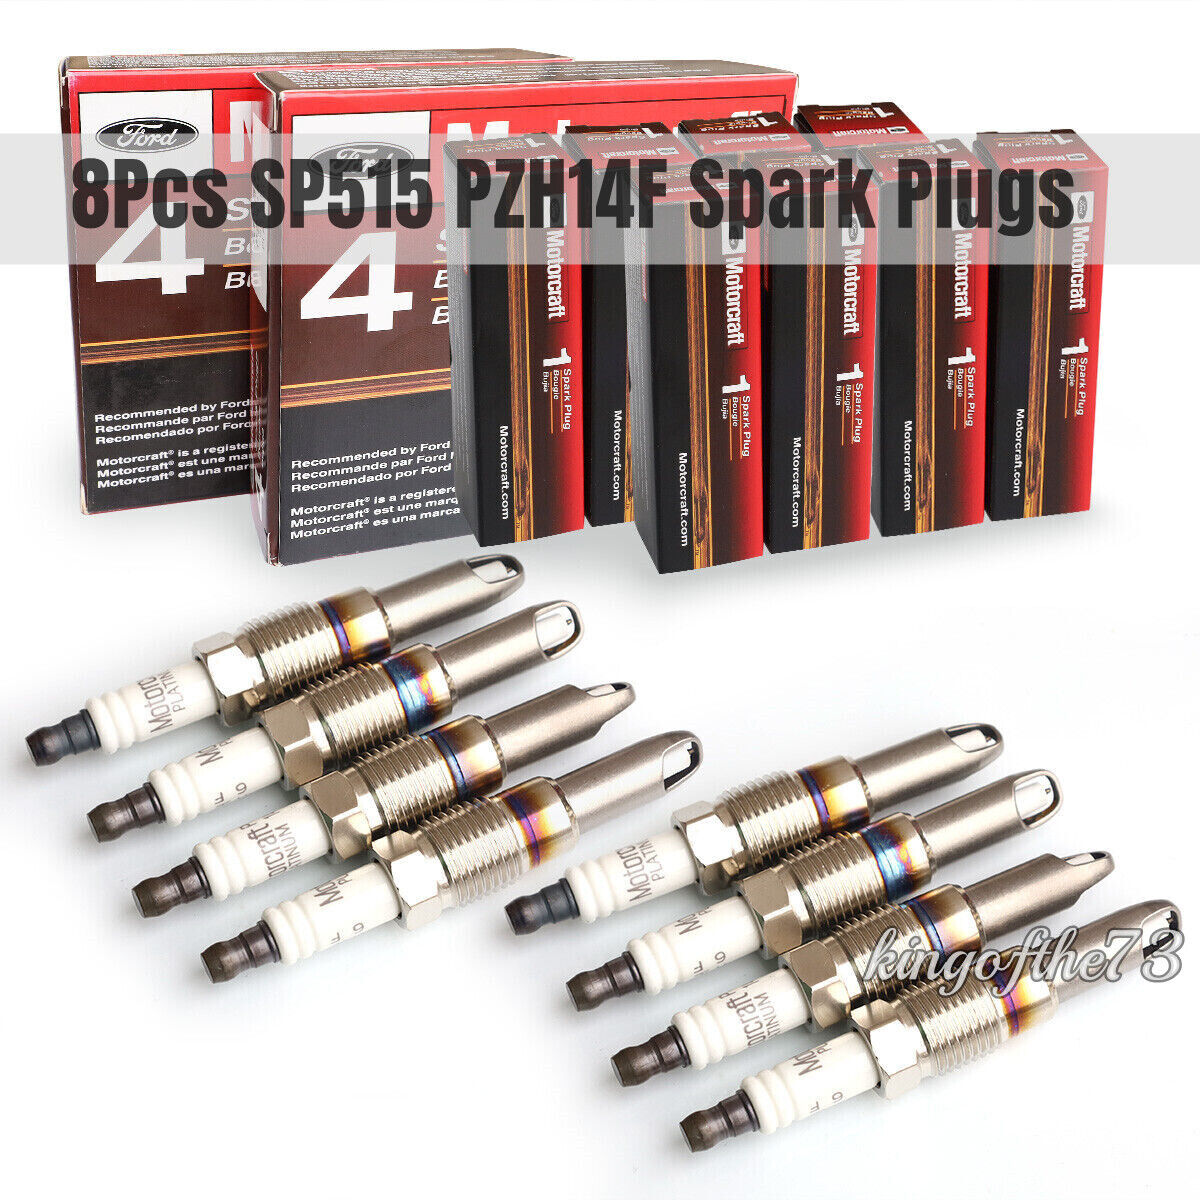 8Pcs SP515 PZH14F Spark Plugs Fits For Ford Motorcraft F150 5.4L PZK14F SP-546